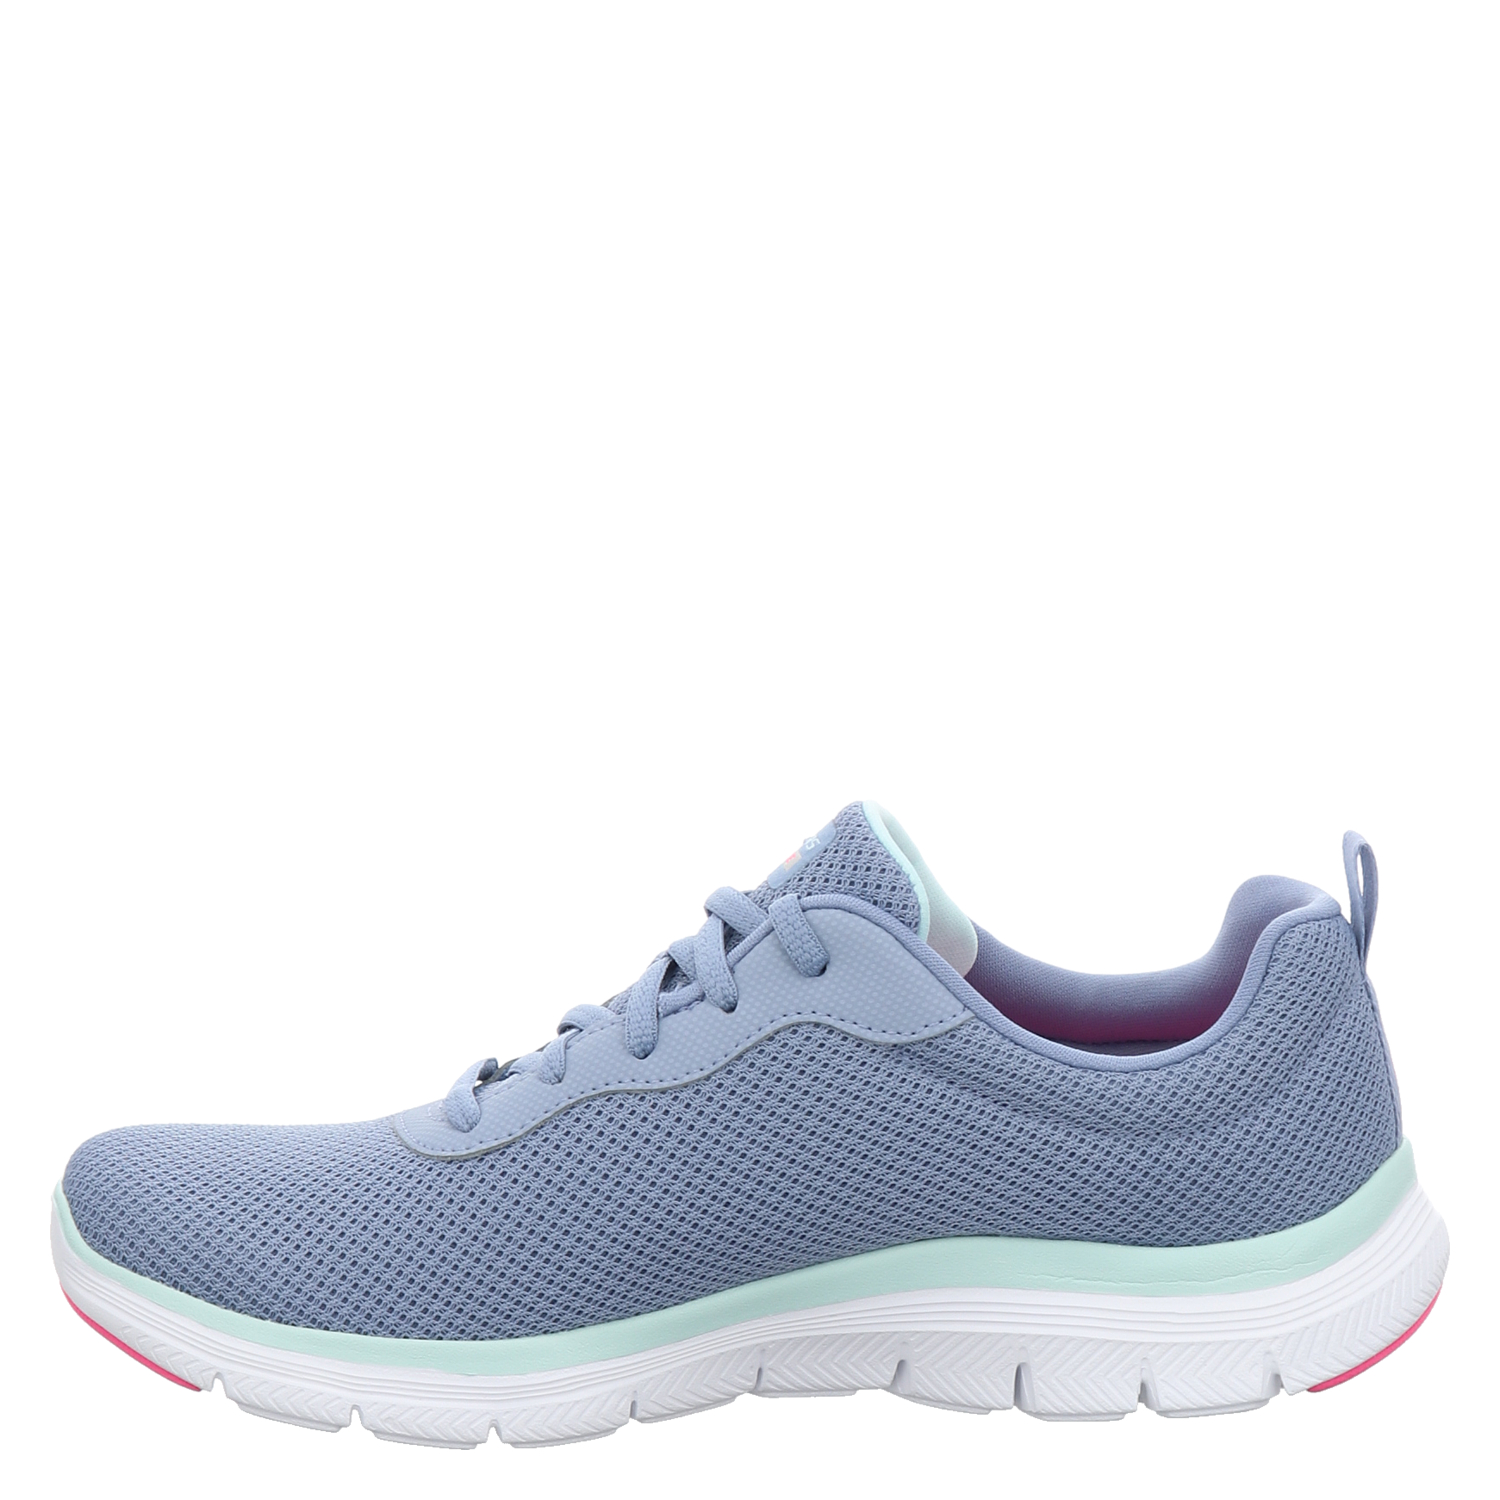 Skechers, Flex Appeal für in blau Brilliant, Damen Sneaker 4.0